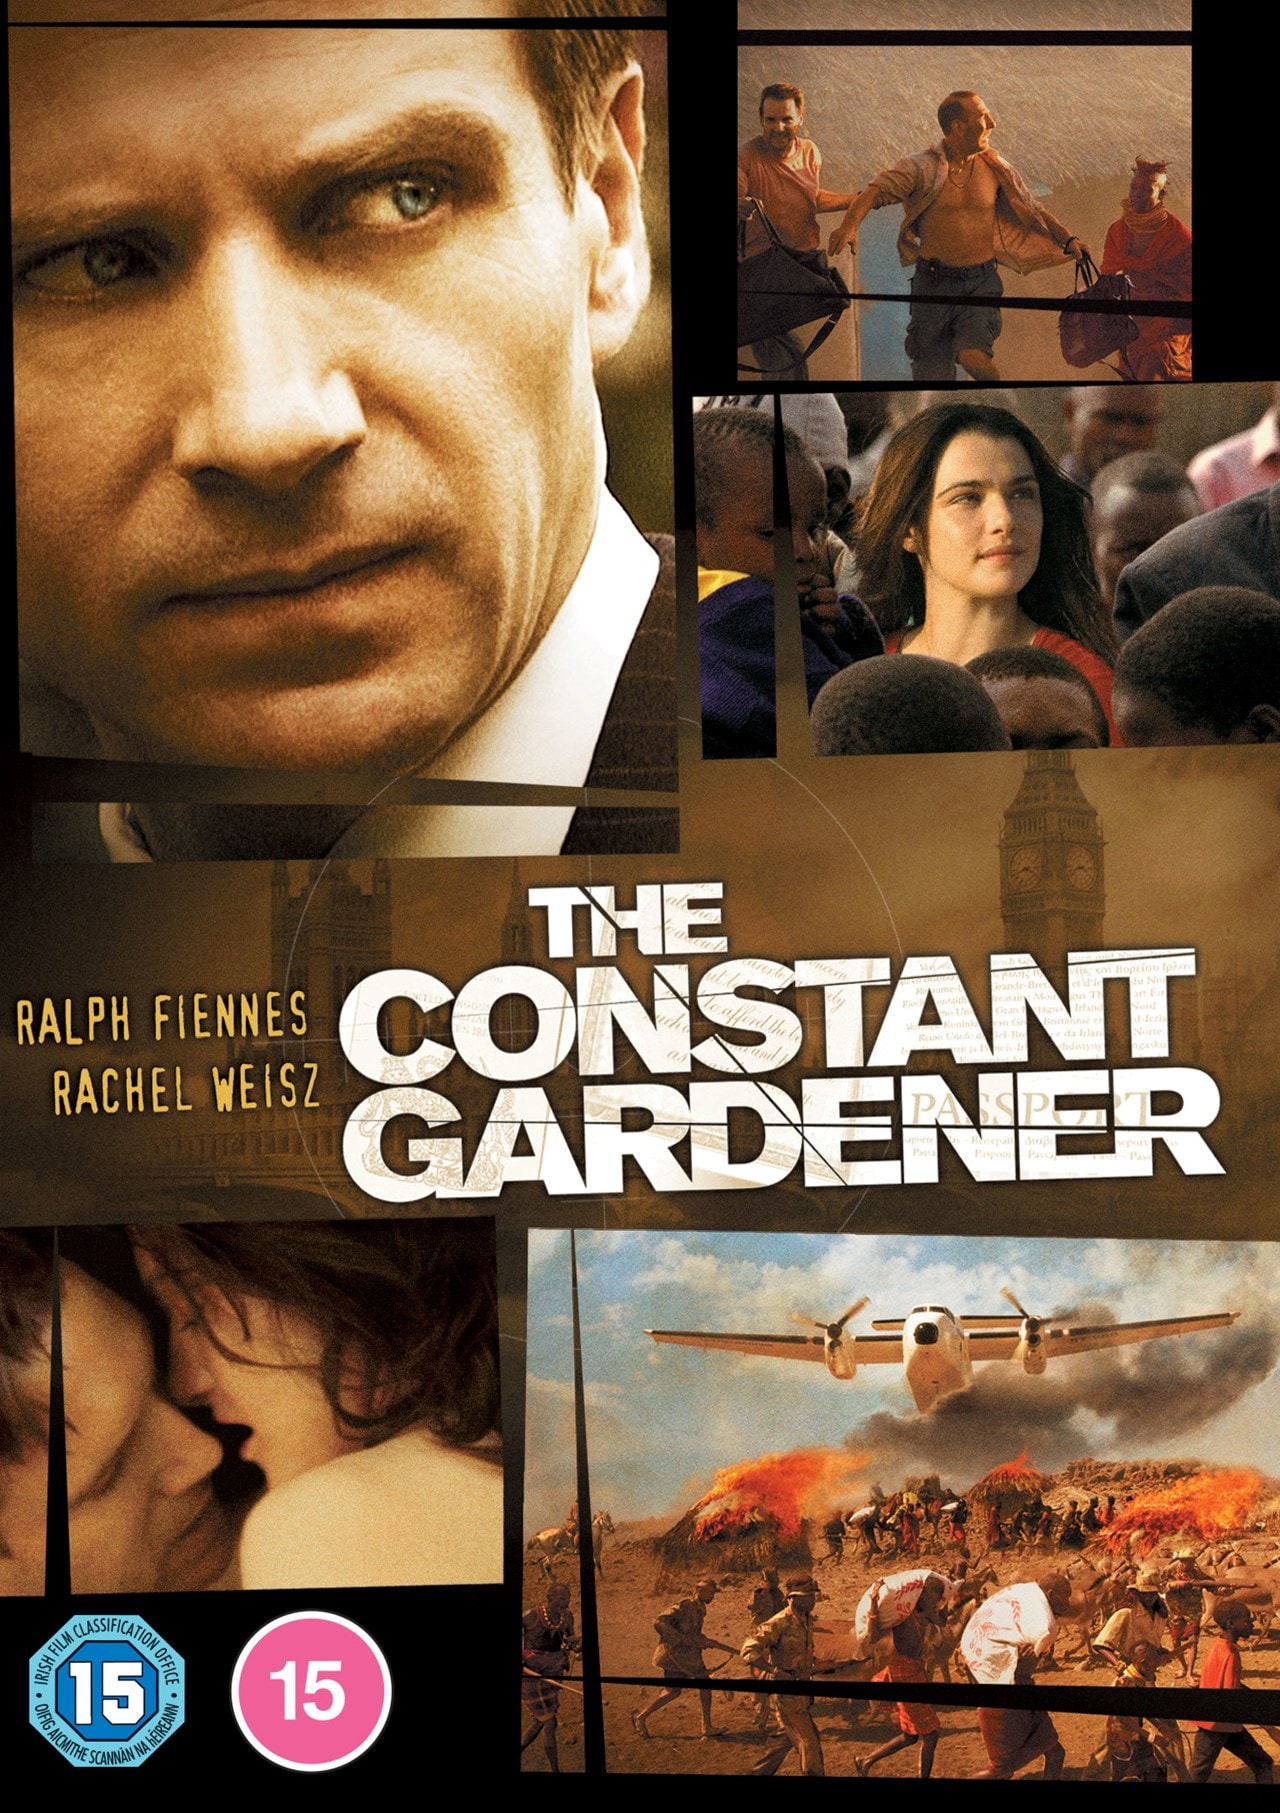 the constant gardener movie torrent